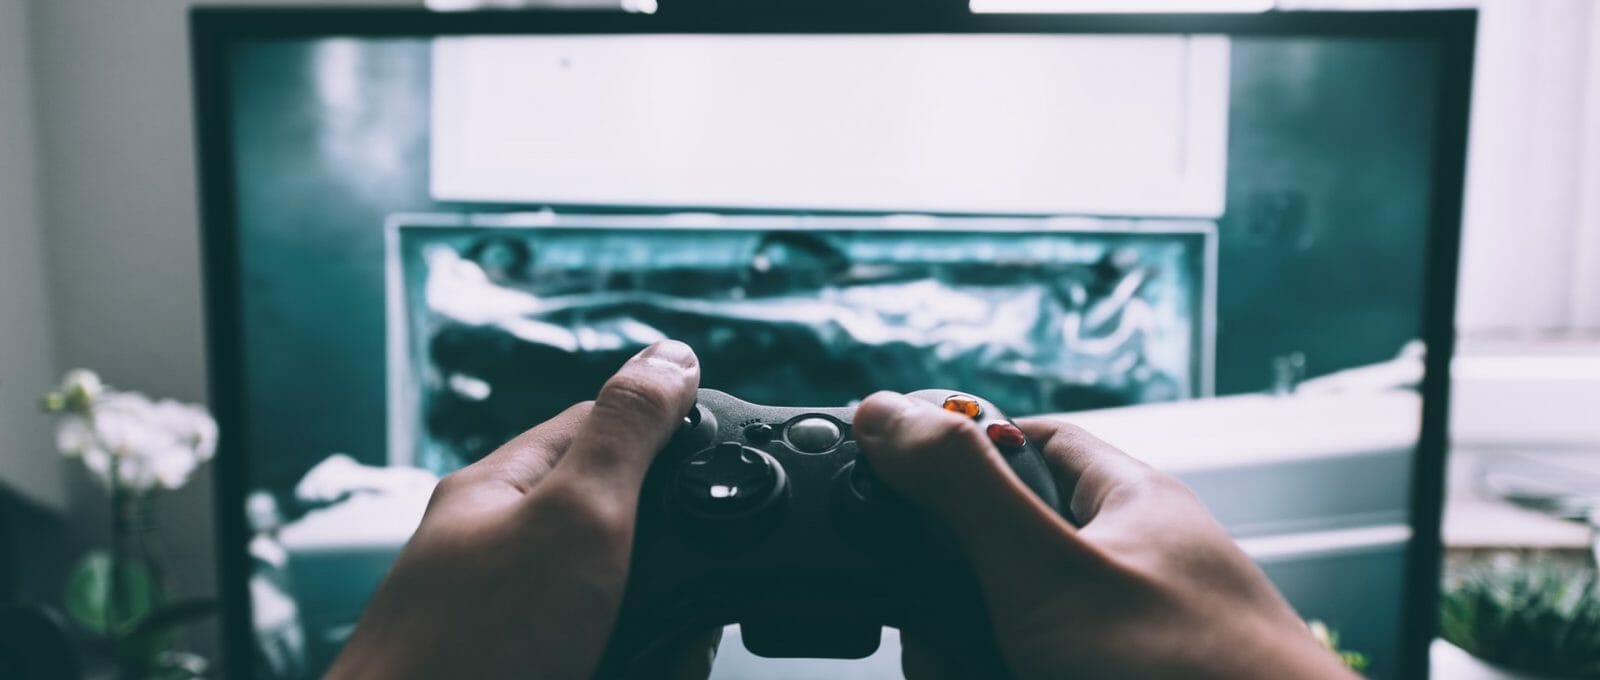 imagem de tela de computador e adolescente segurando controle de videogame em frente a ela